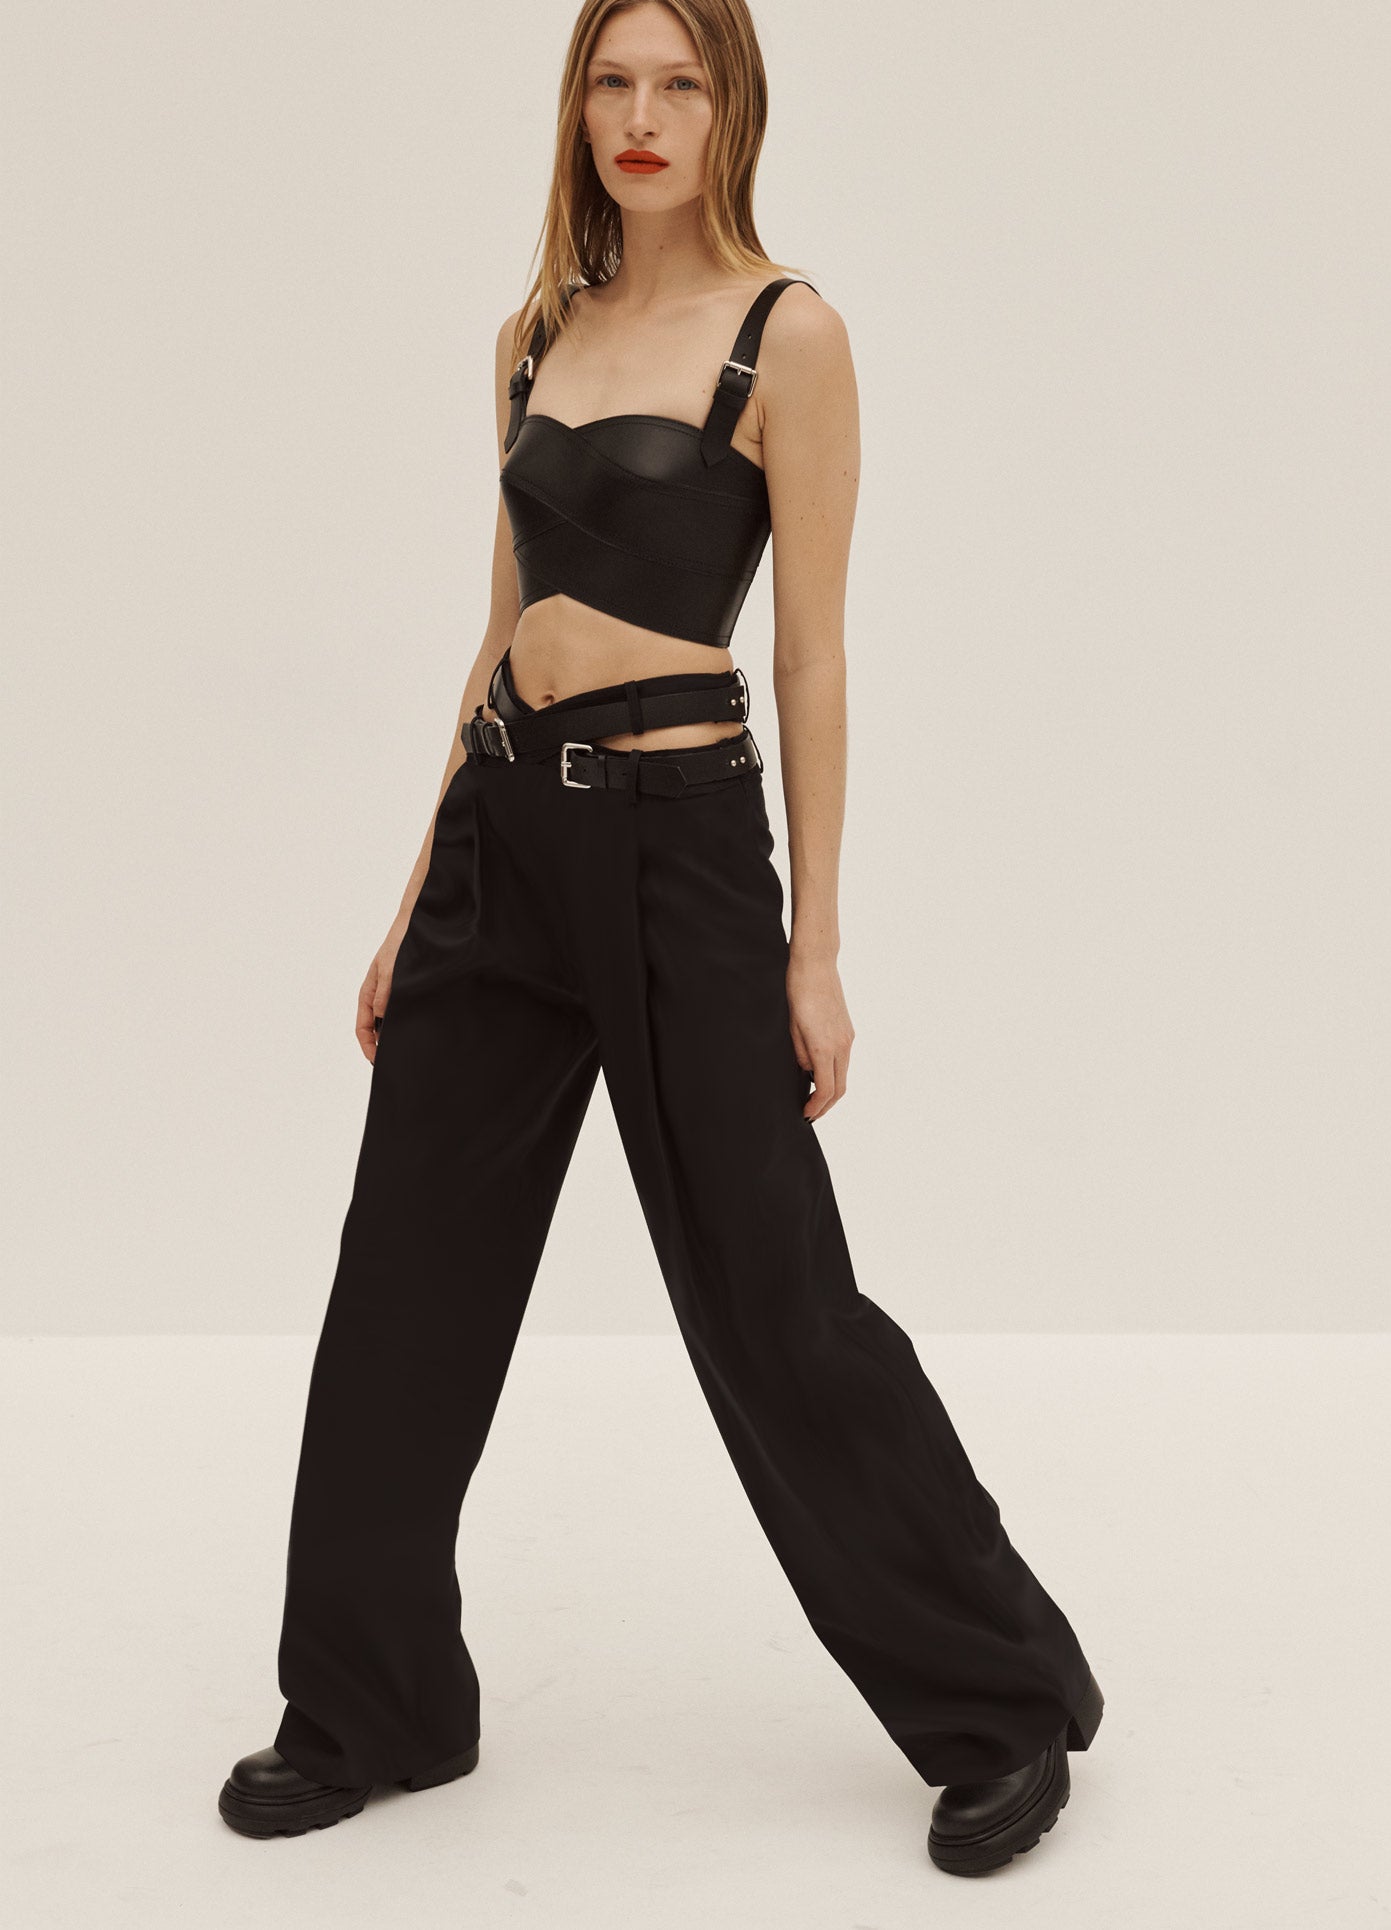 MONSE Crisscross Trousers in Black on Model Walking Side View